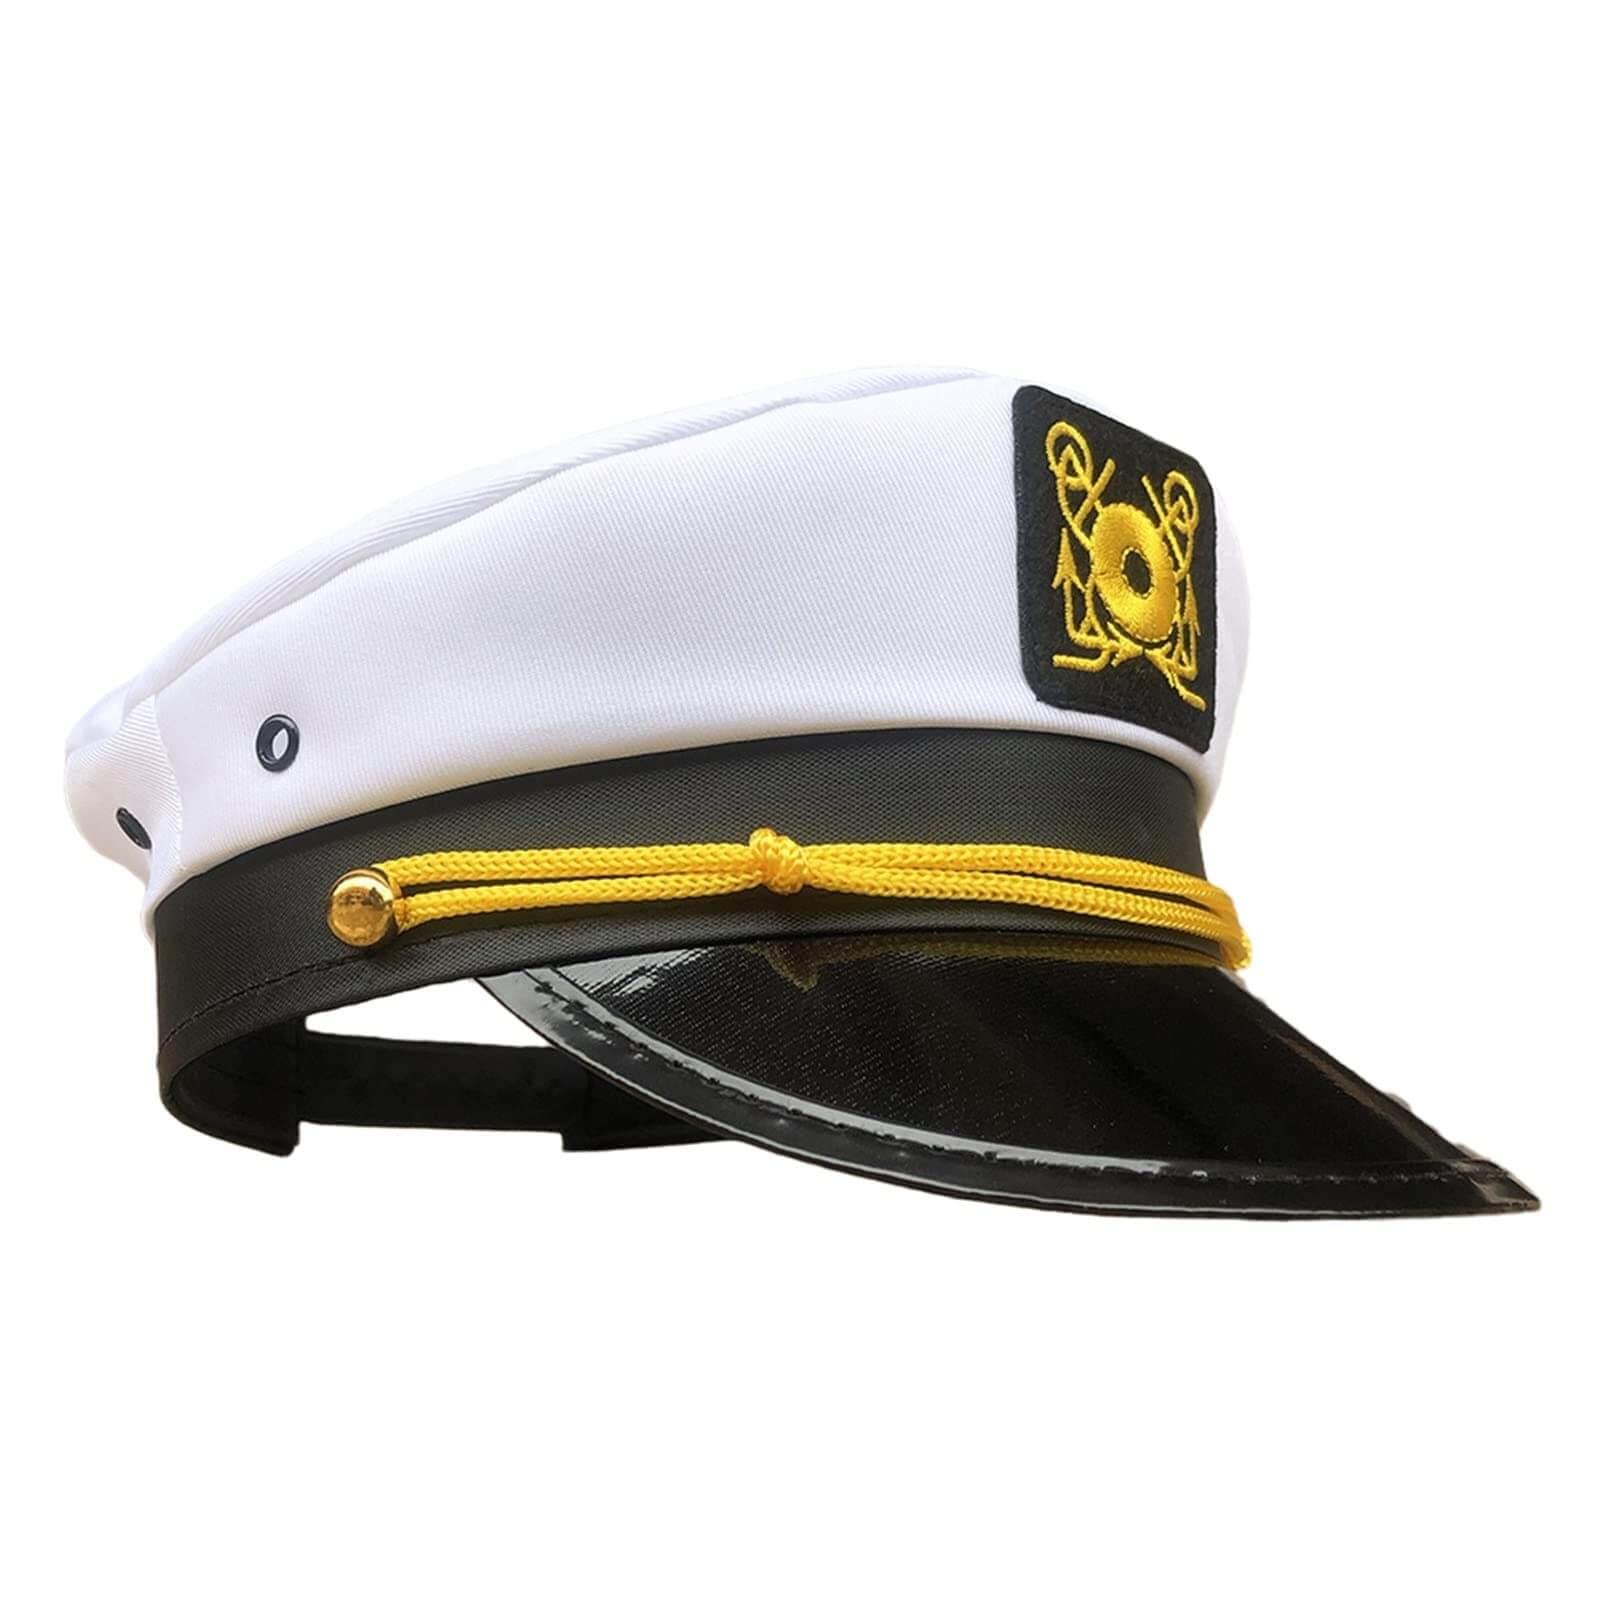 boat captain hat